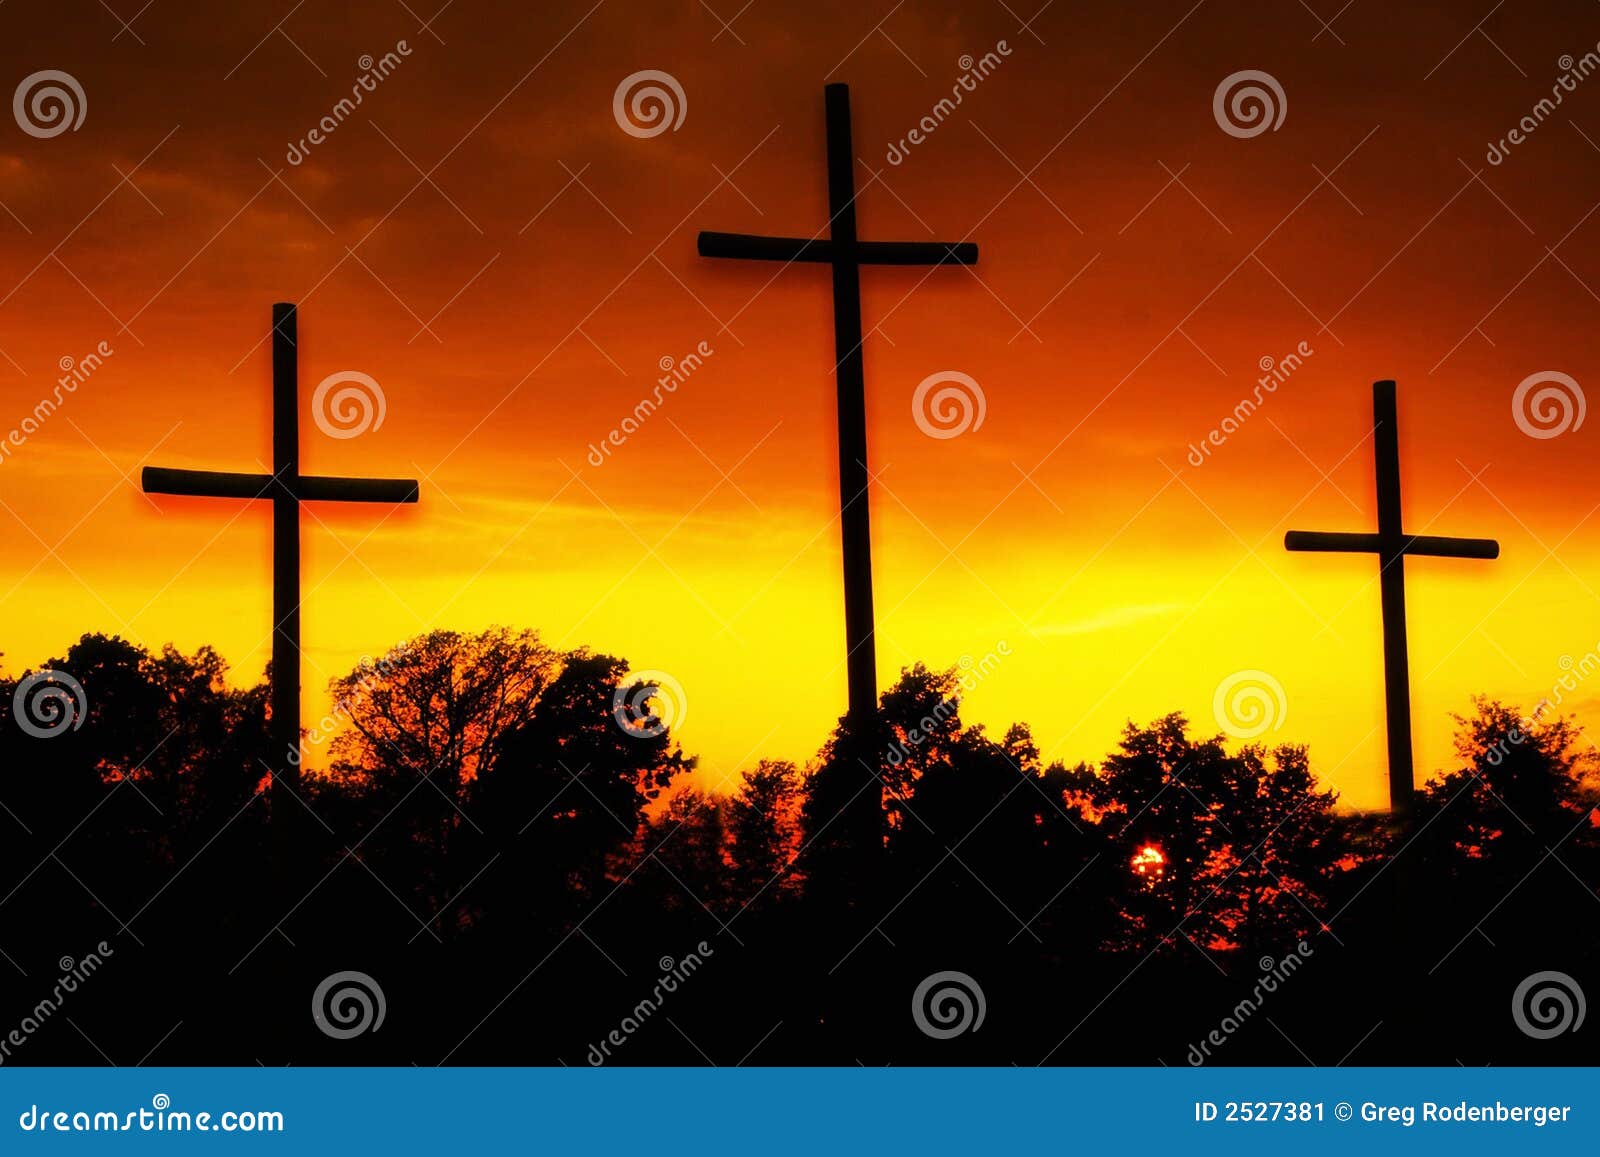 Gloria de mañana. Silueta de tres cruces en la salida del sol